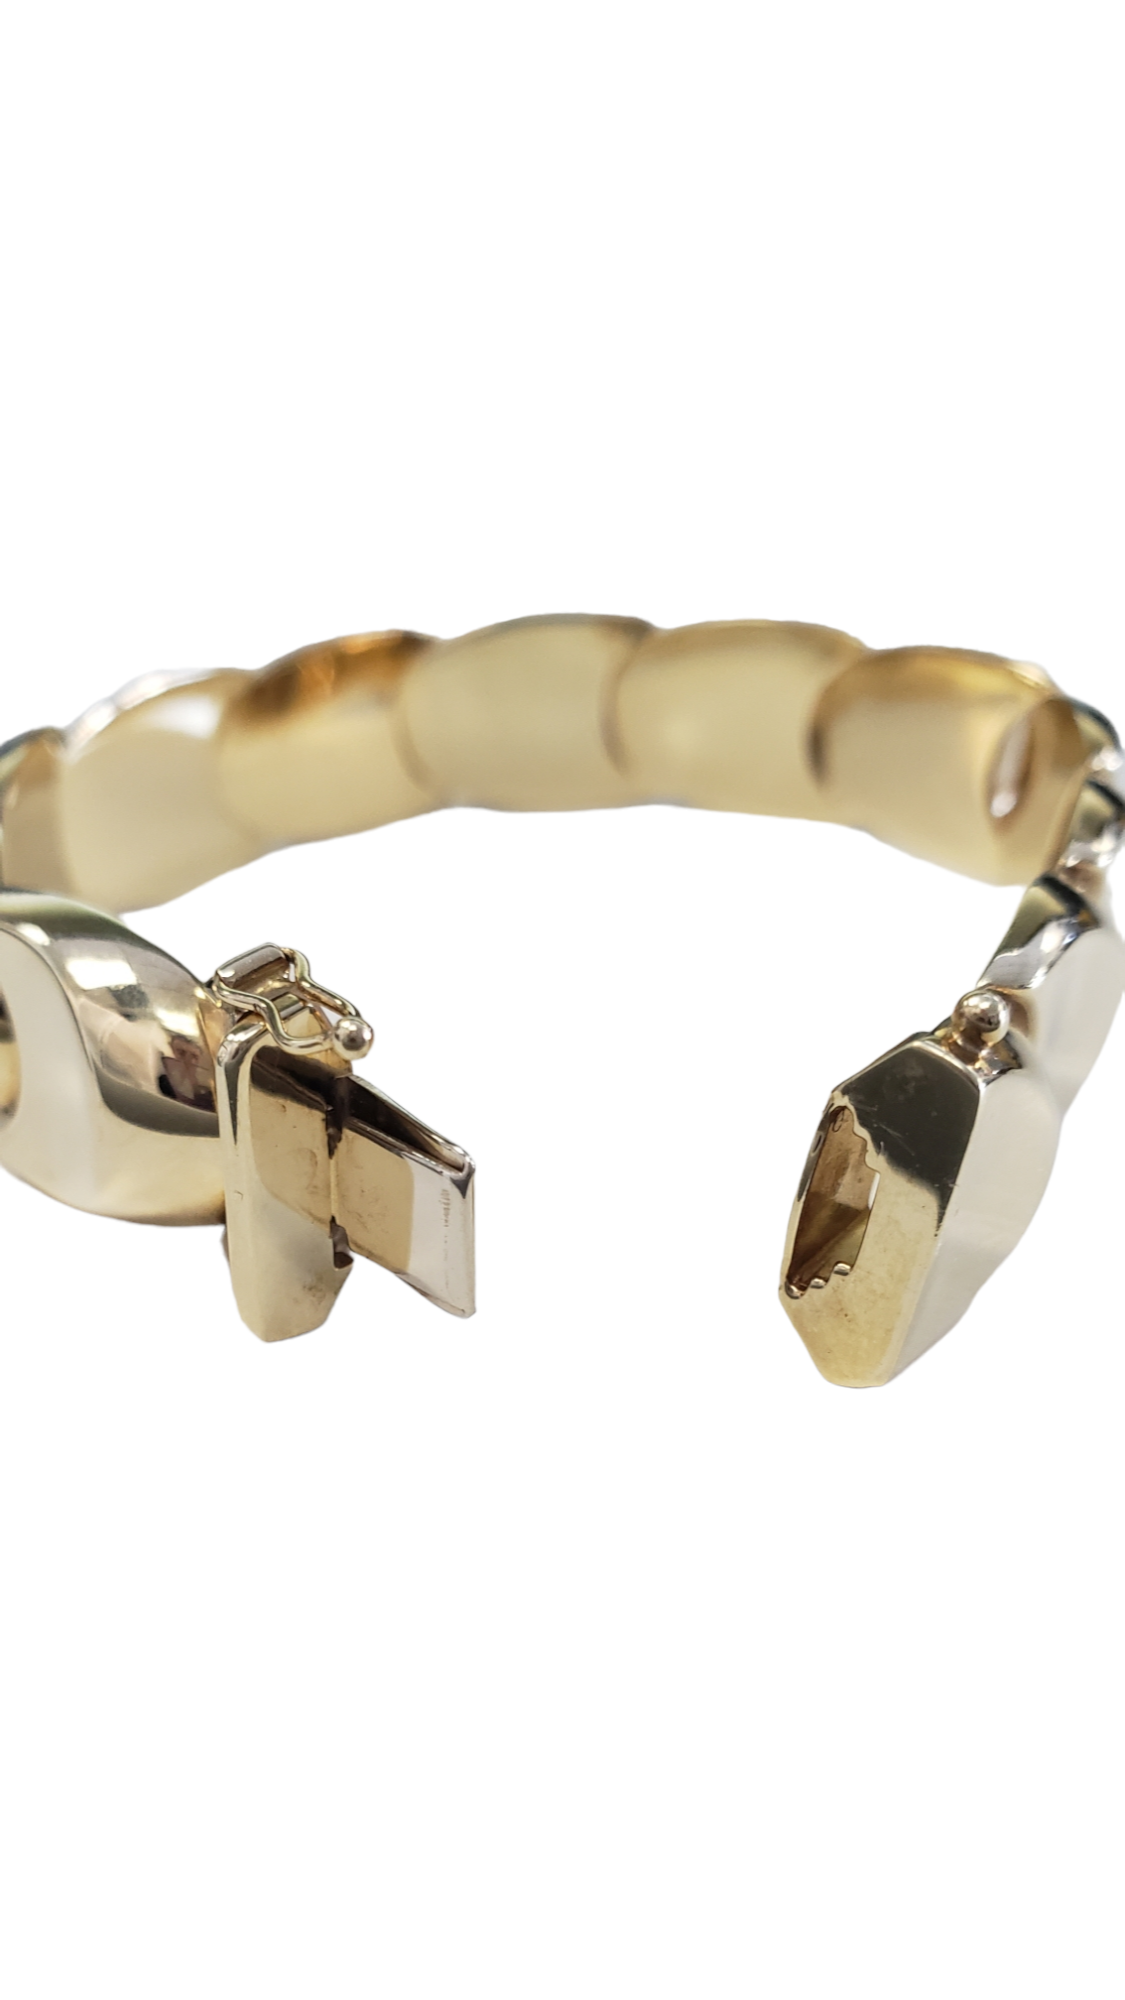 14K Yellow Gold Fancy U-Shaped Link Women's Bracelet New W/O Tags